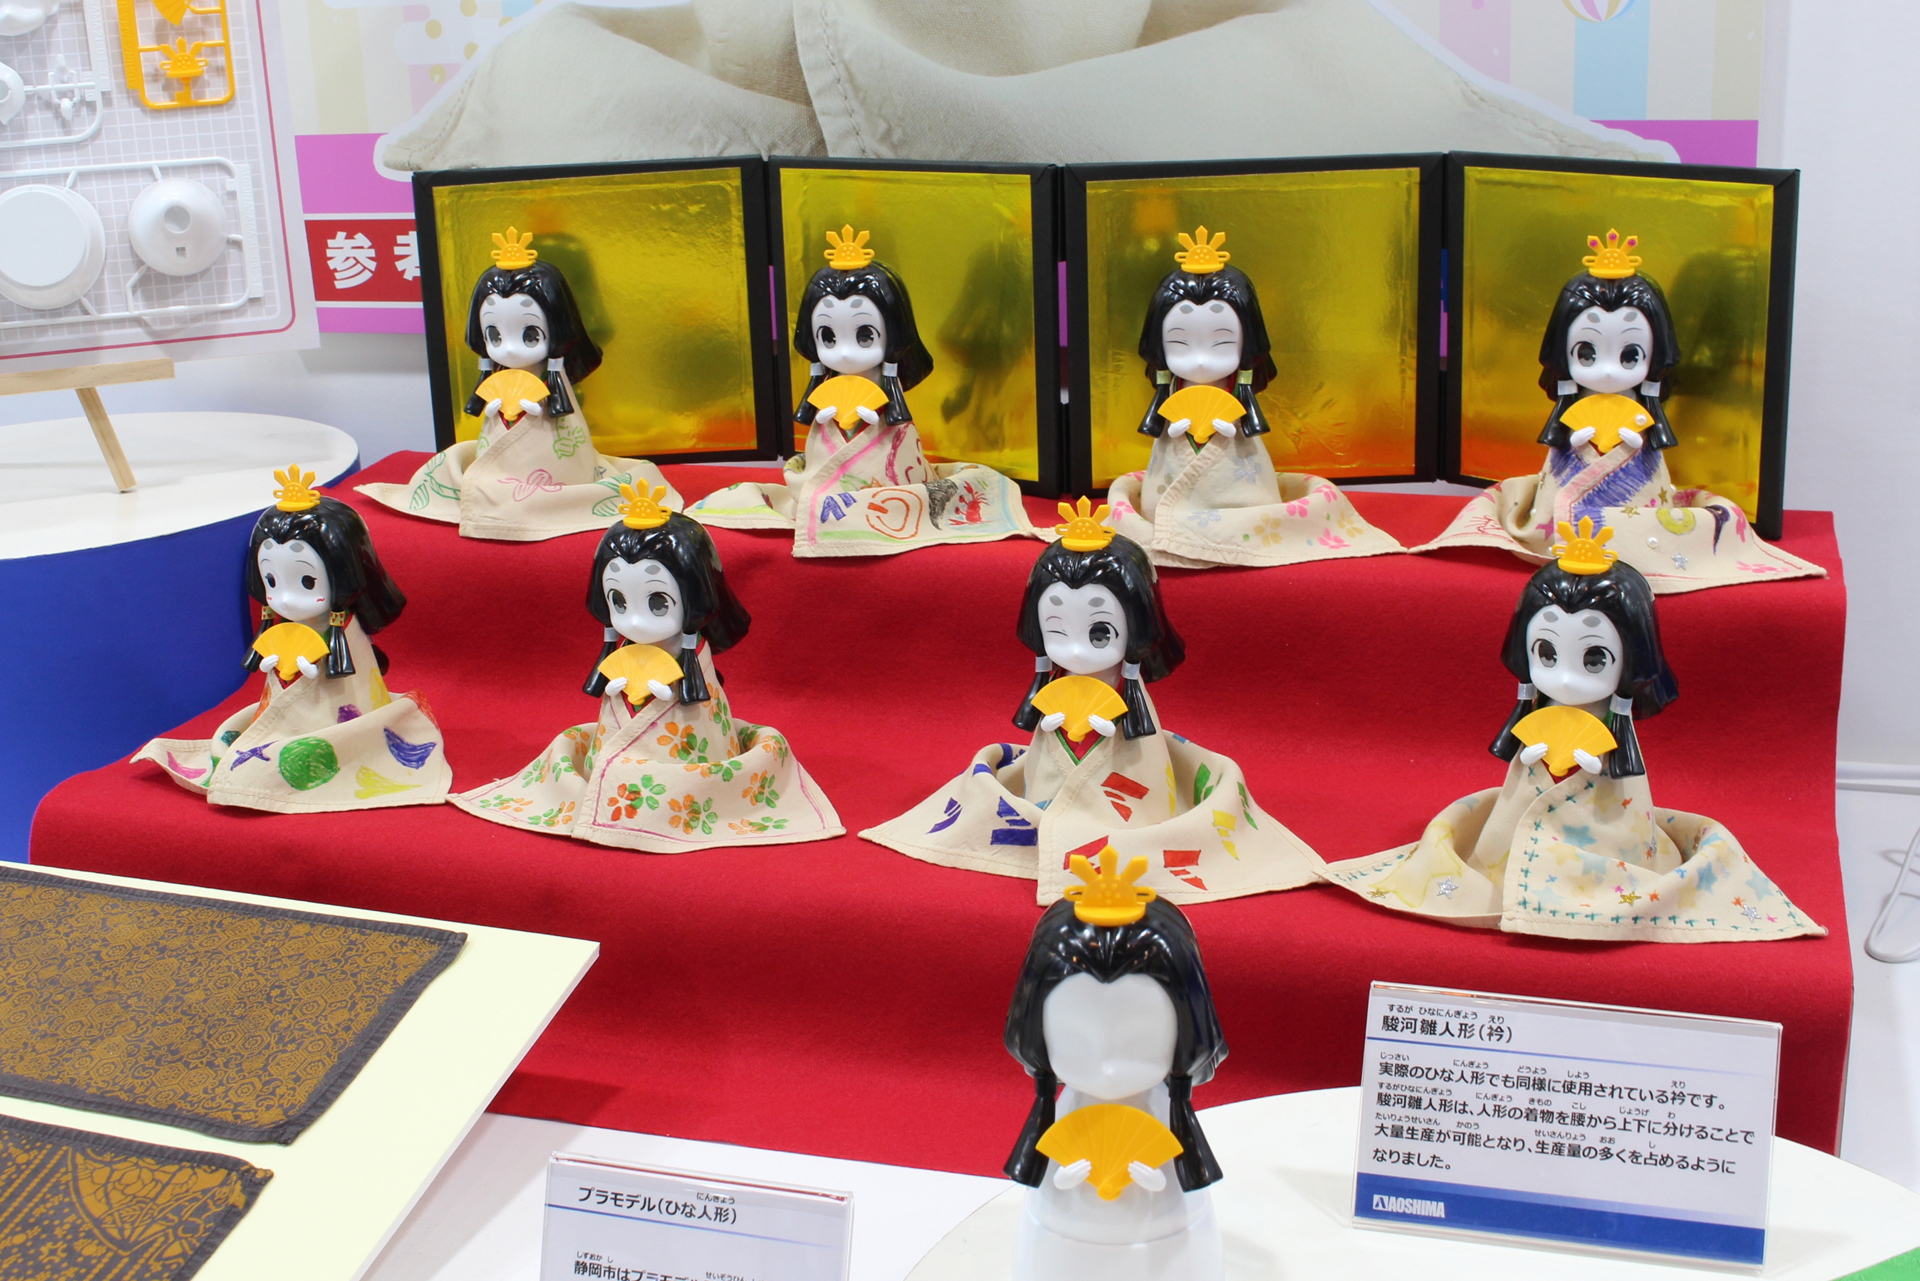 静岡の伝統工芸「駿河雛人形」をアオシマがプラモデル化。小中学生招待